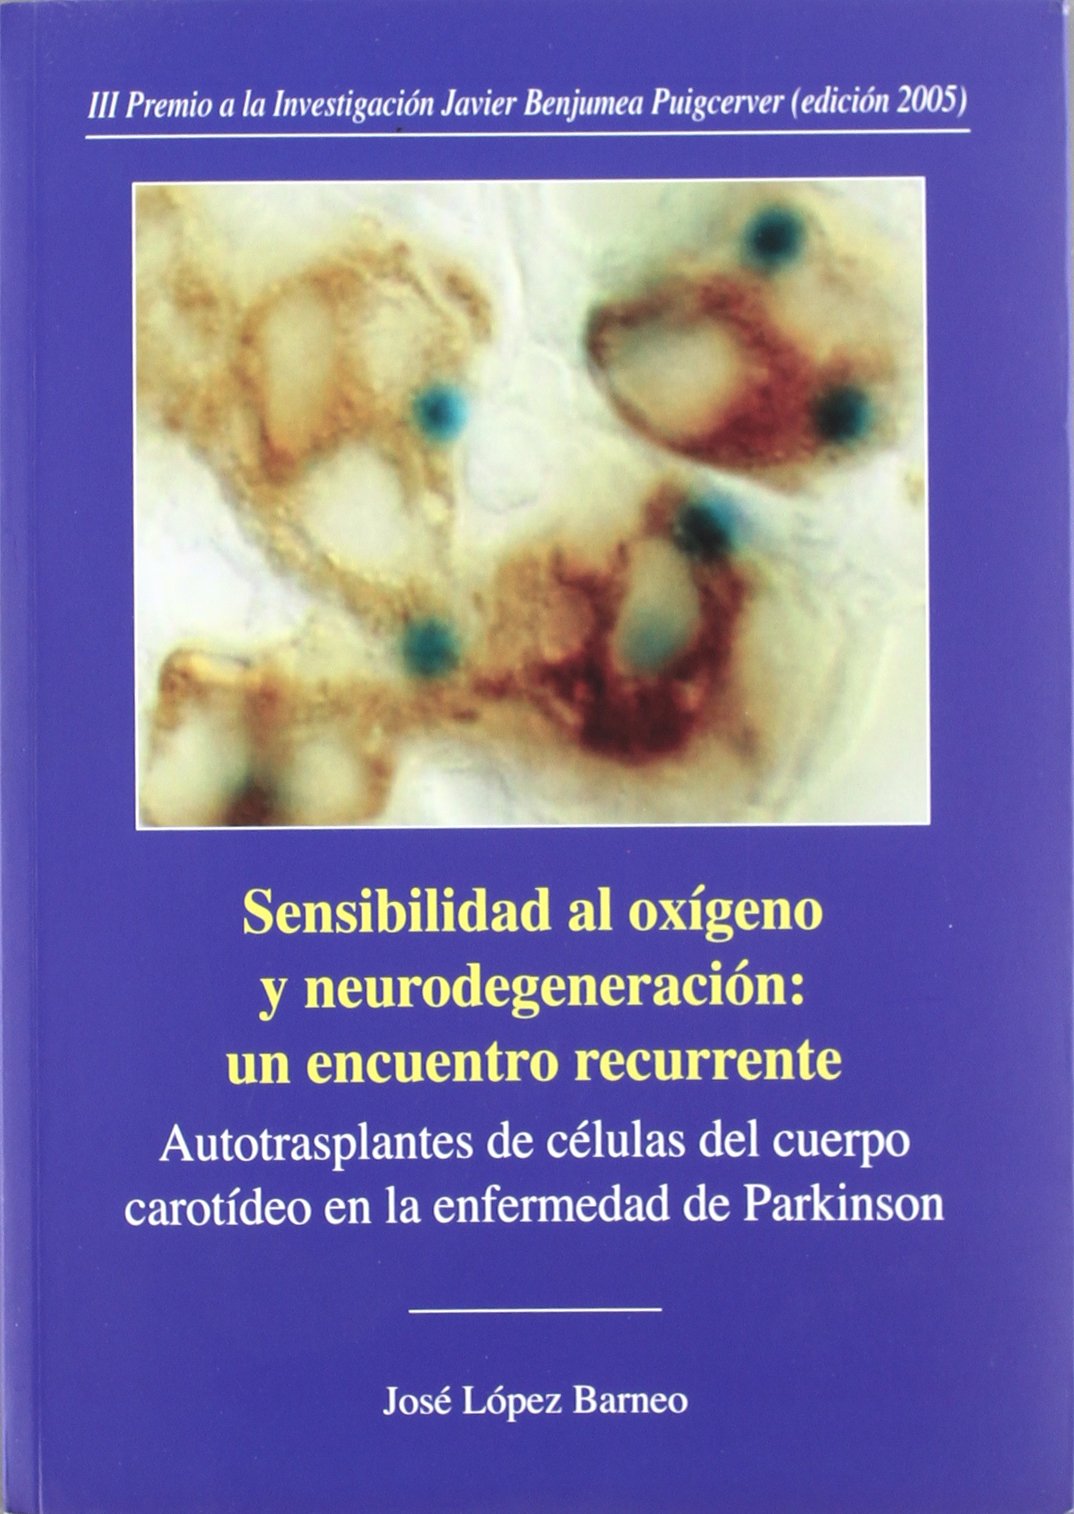 Imagen de portada del libro Sensibilidad al oxígeno y neurodegeneración